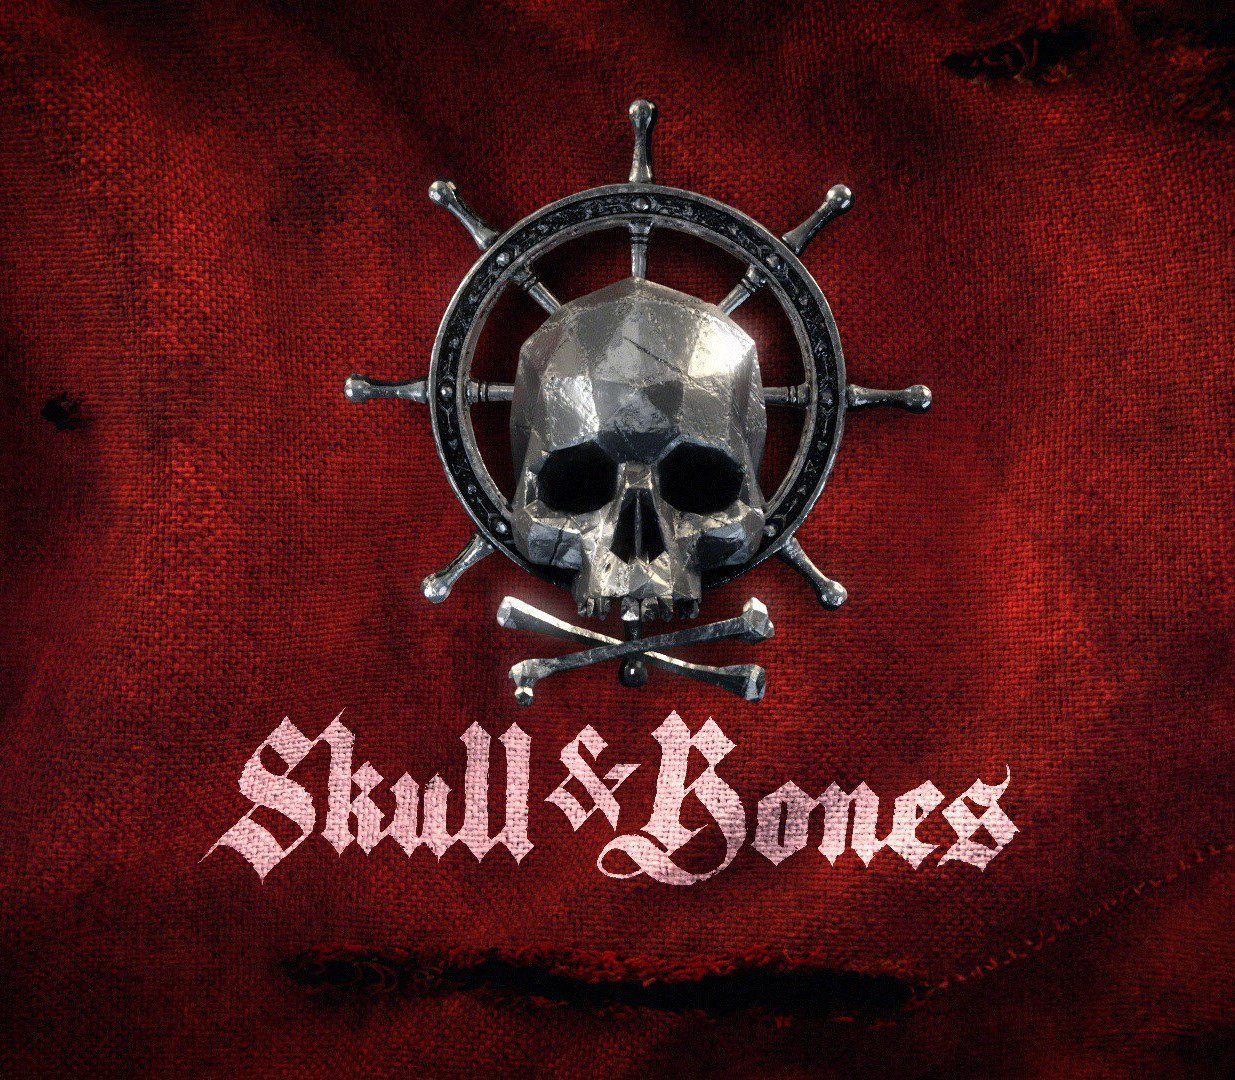 Skull and Bones  Ubisoft (EU / UK)